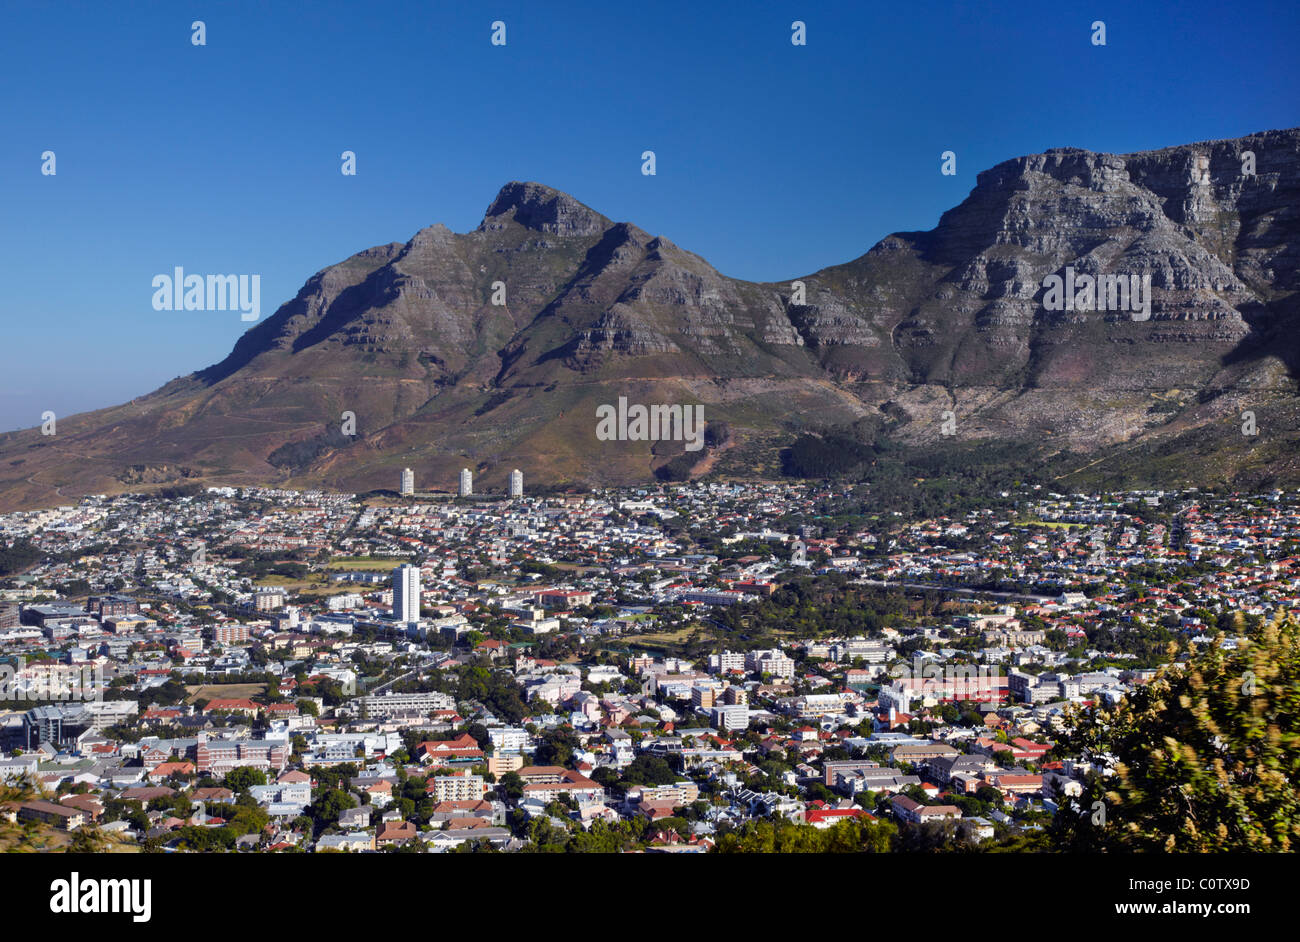 Ciudad del Cabo y Table Mountain vista desde Signal Hill. Western Cape, Sudáfrica. Foto de stock